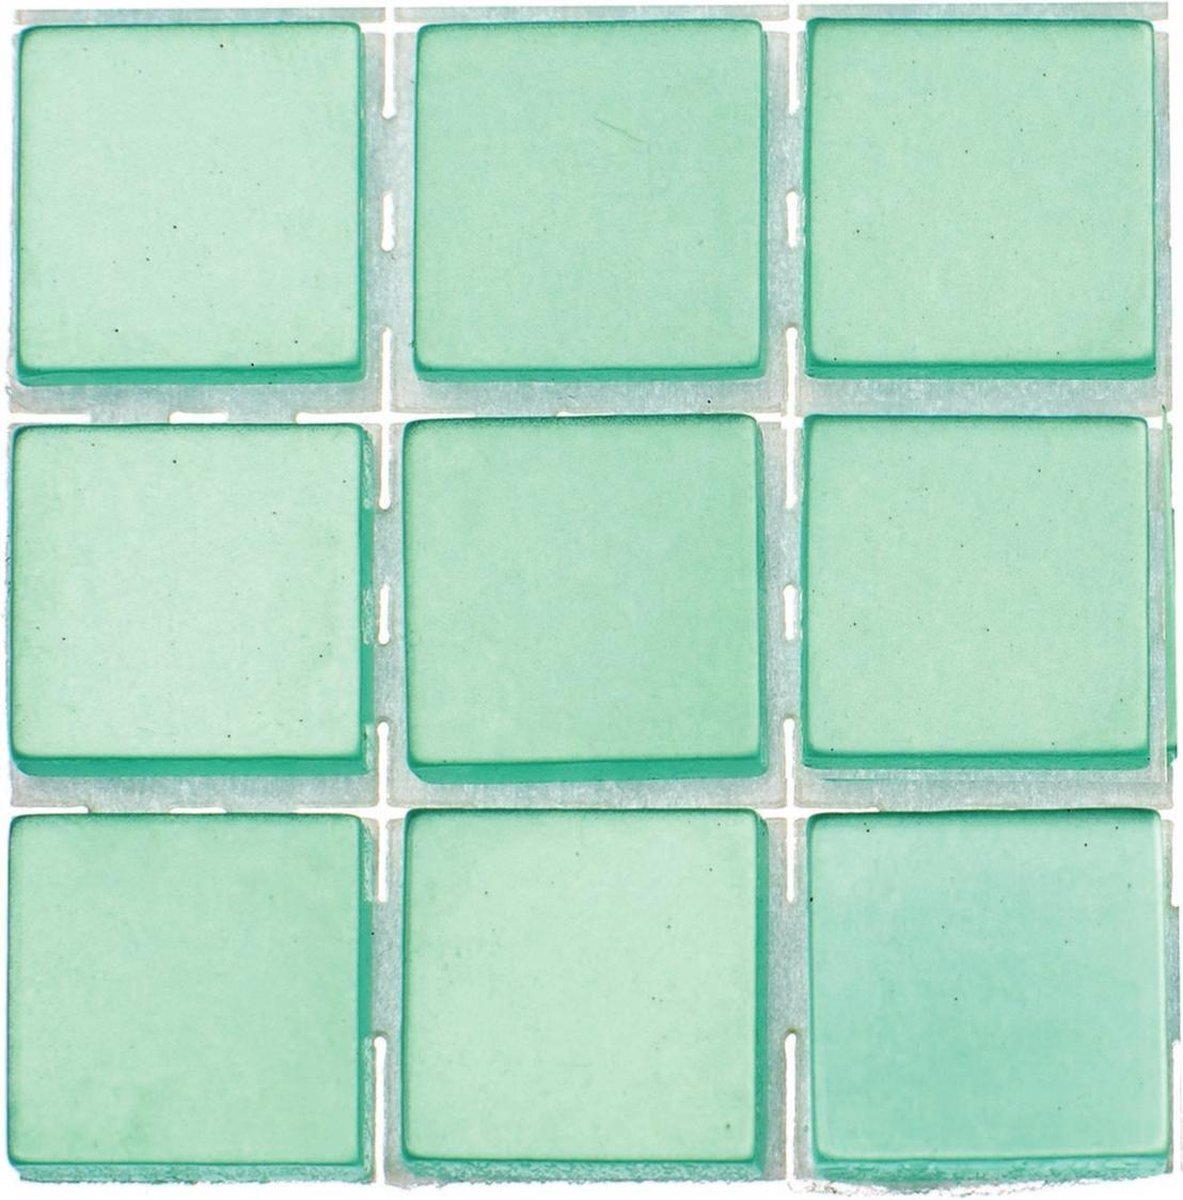 Glorex Hobby 189x stuks mozaieken maken steentjes/tegels kleur turquoise met formaat 10 x 10 x 2 mm